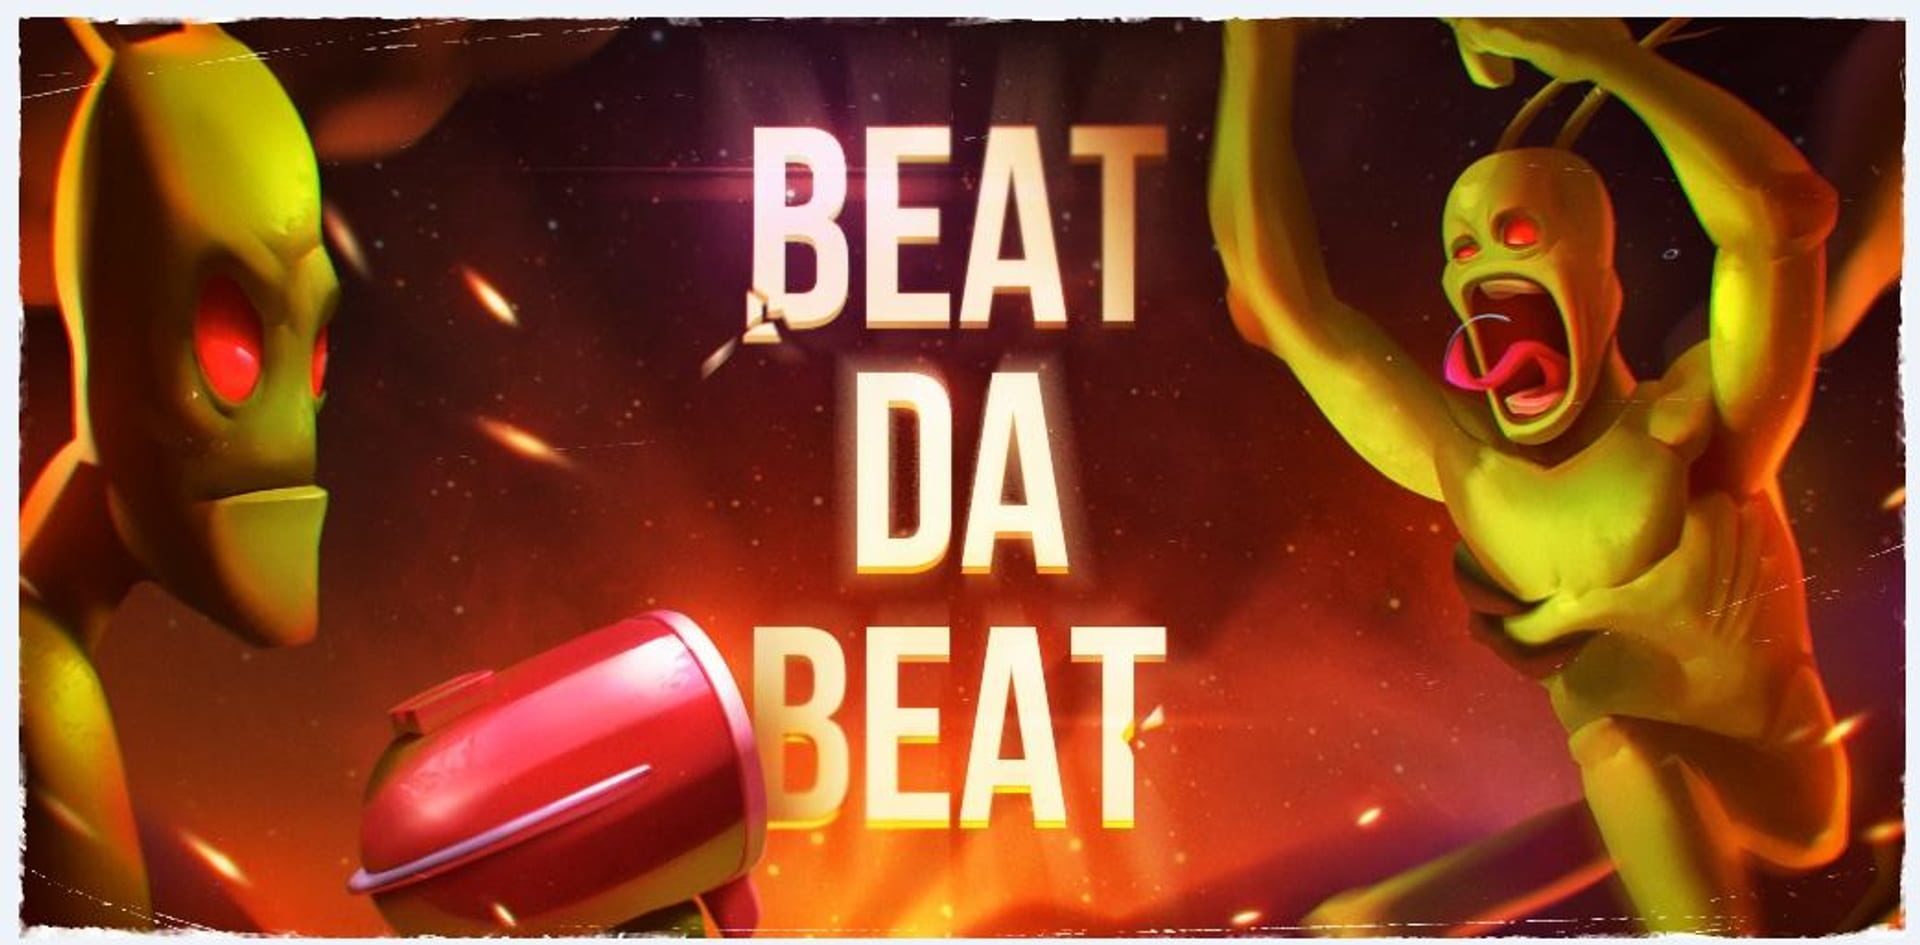 Steam beat da beat фото 6